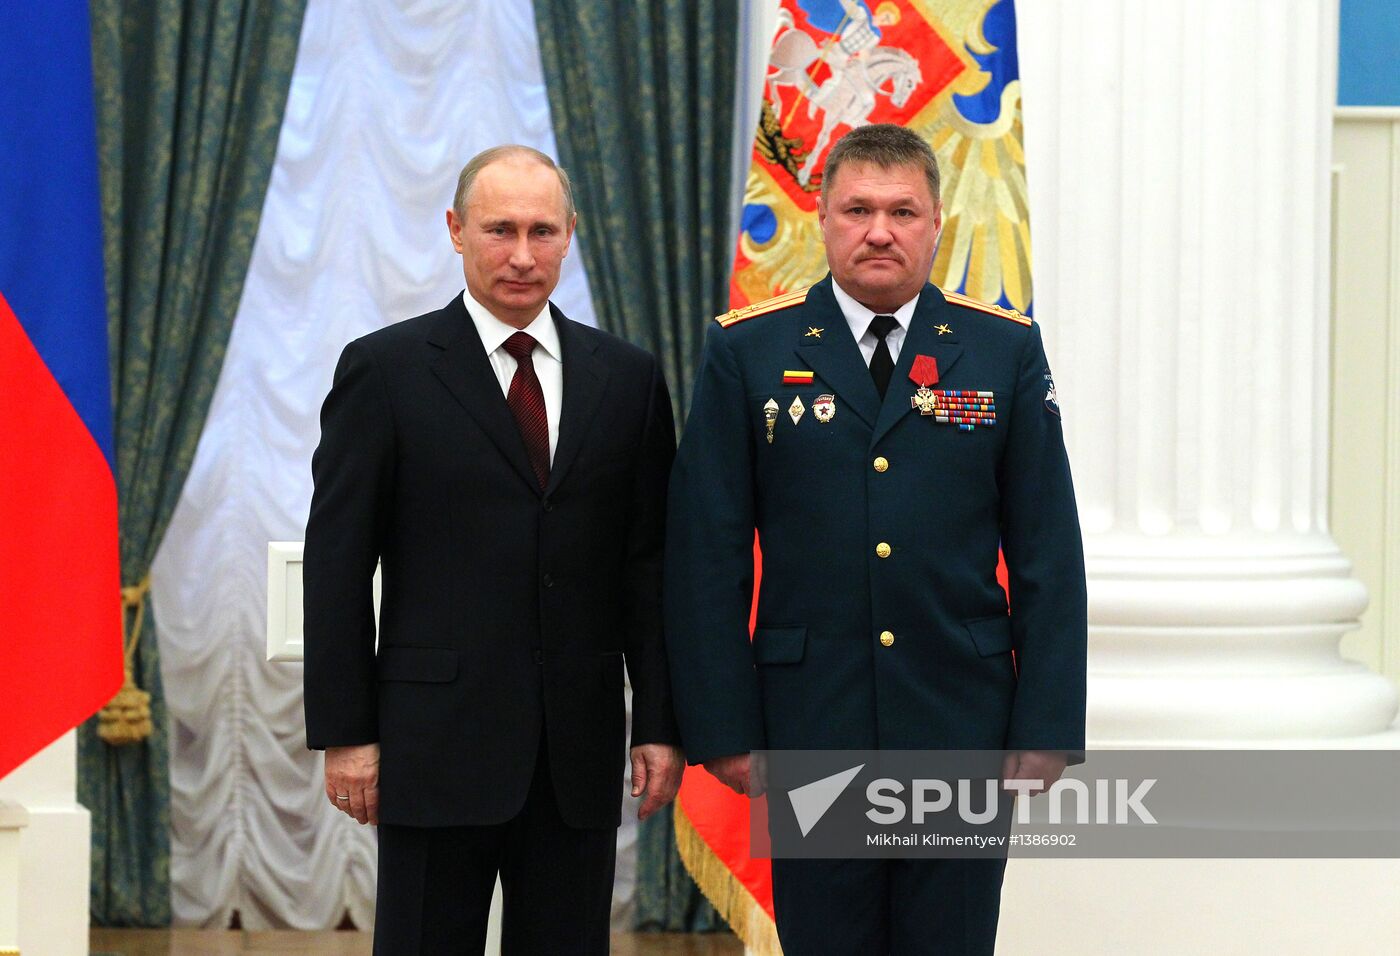 President Vladimir Putin presents state awards in Kremlin